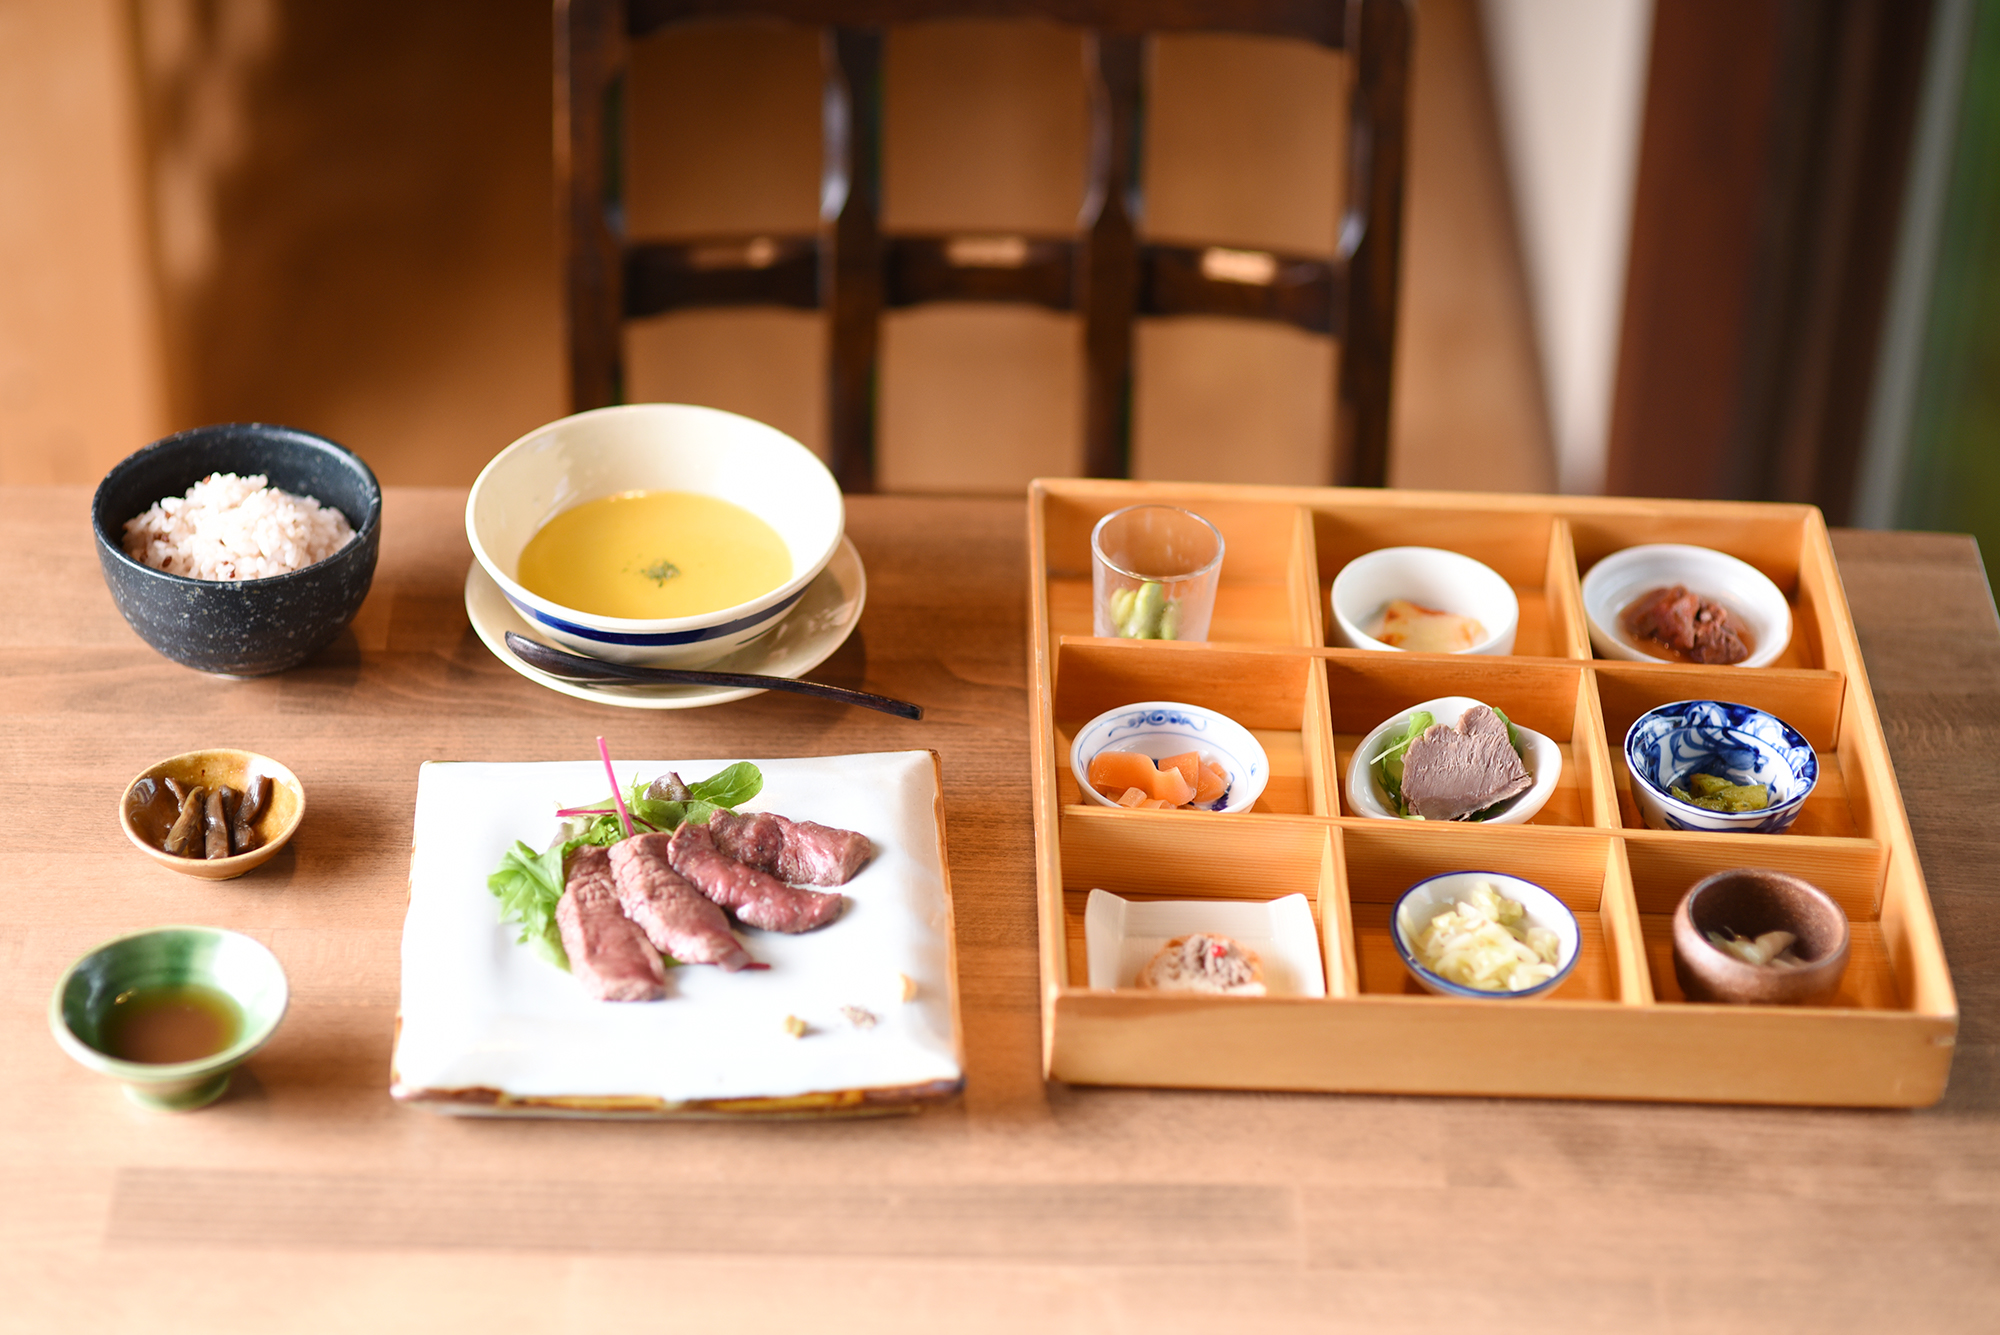 【ウェブ版HiTOKOTO】丹波のすてきなお店紹介・⿅⾁料理店「無⿅リゾート」